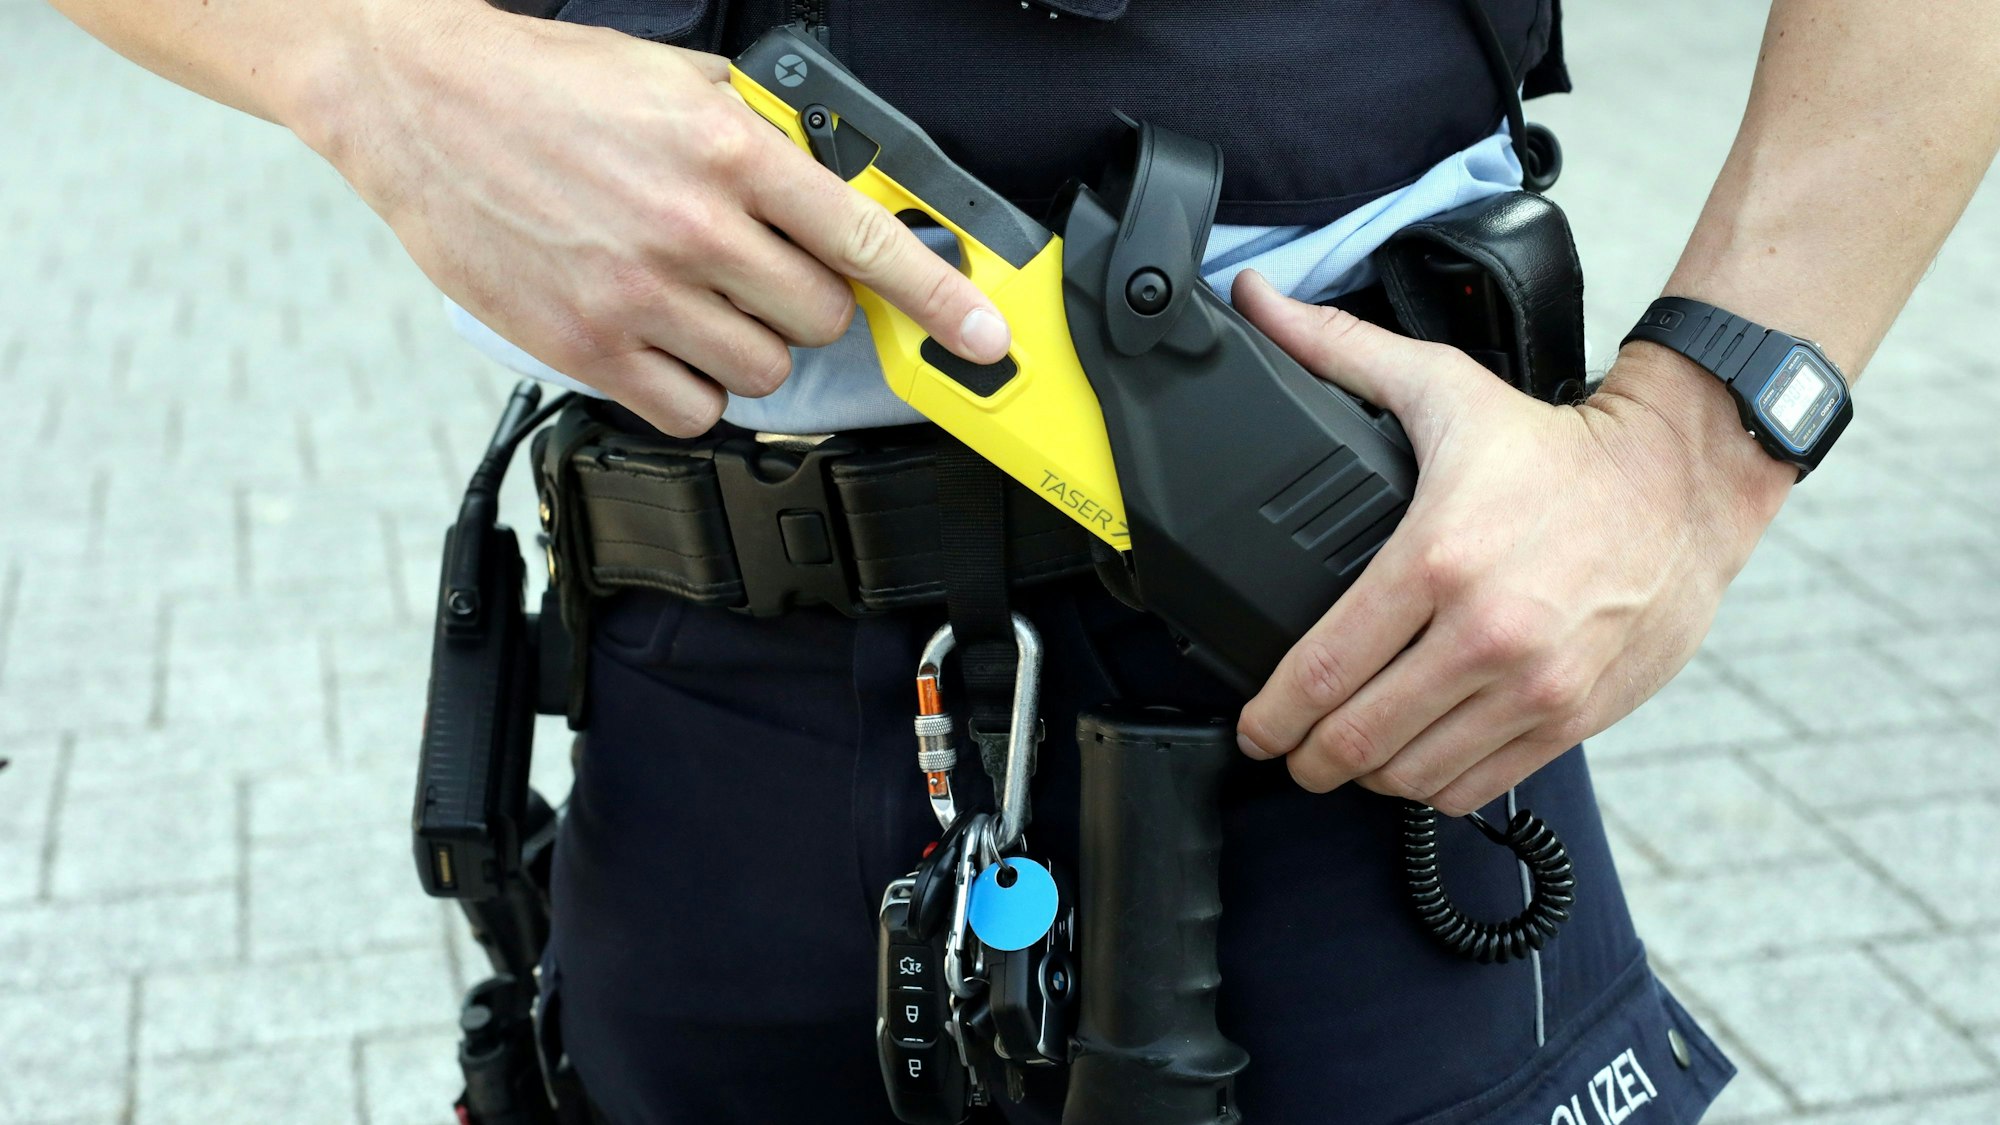 Ein Streifenpolizist zieht einen Taser aus der Halterung am Gürtel.